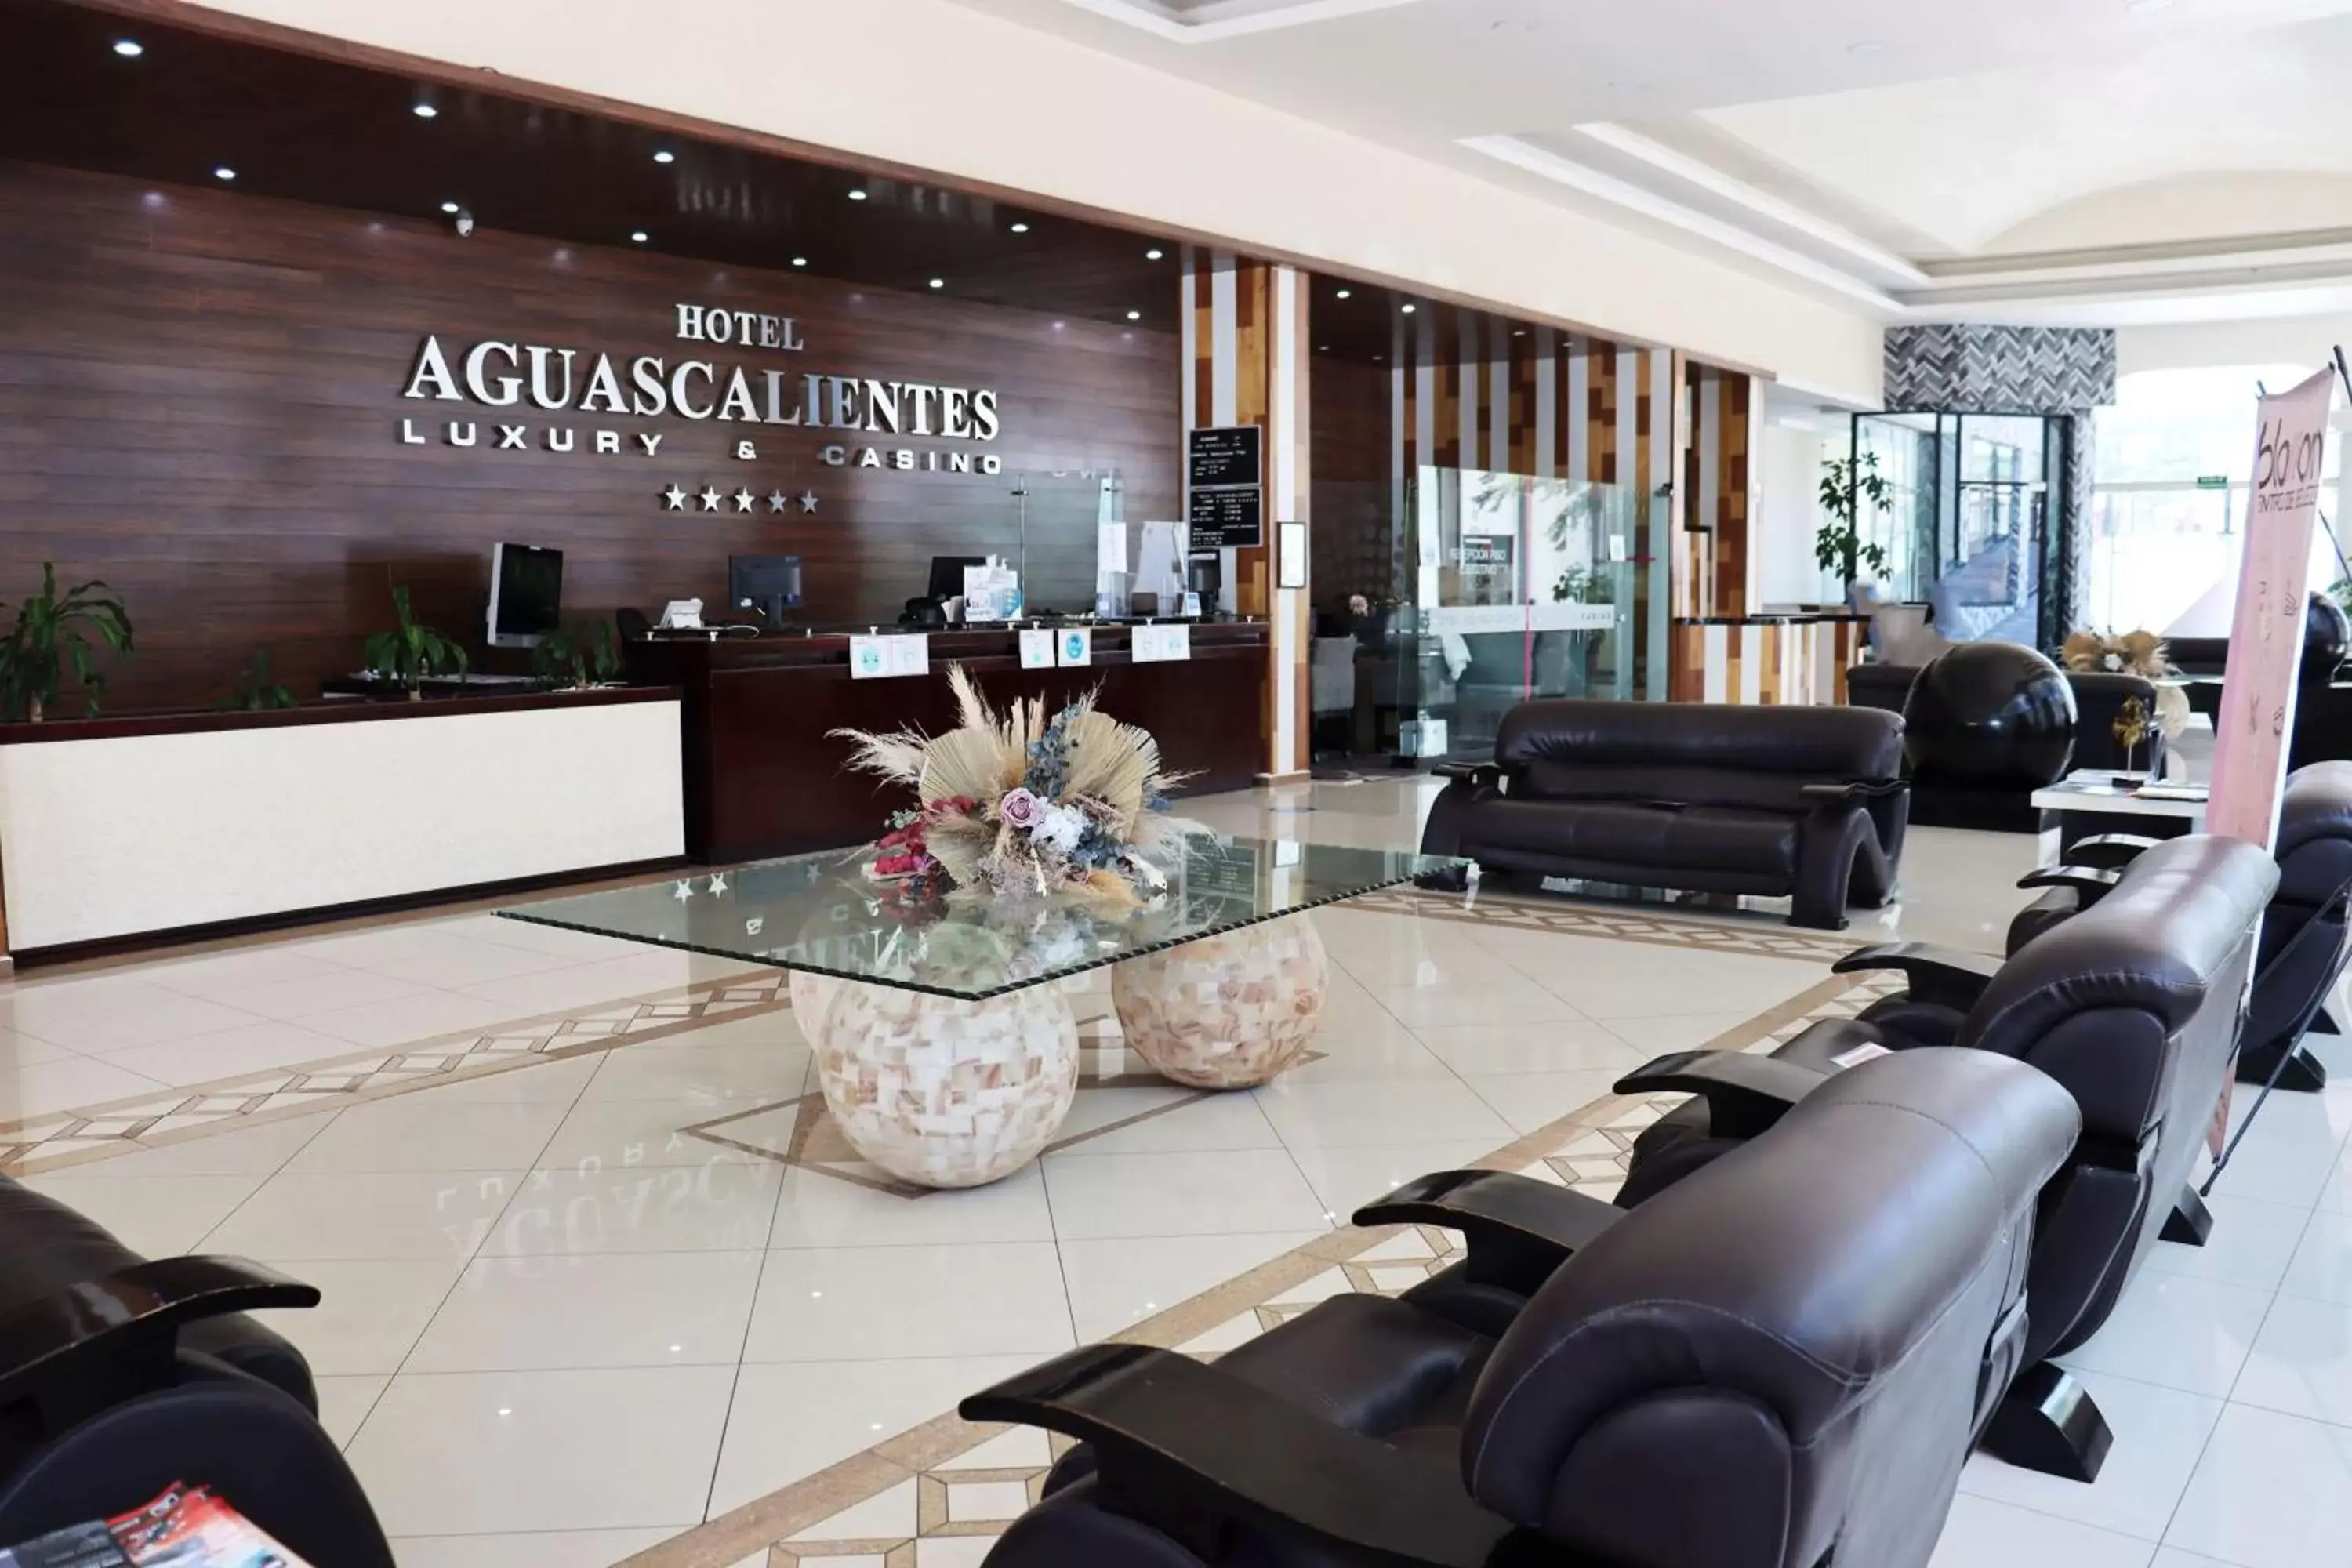 Lobby or reception, Lobby/Reception in Wyndham Garden Aguascalientes Hotel & Casino